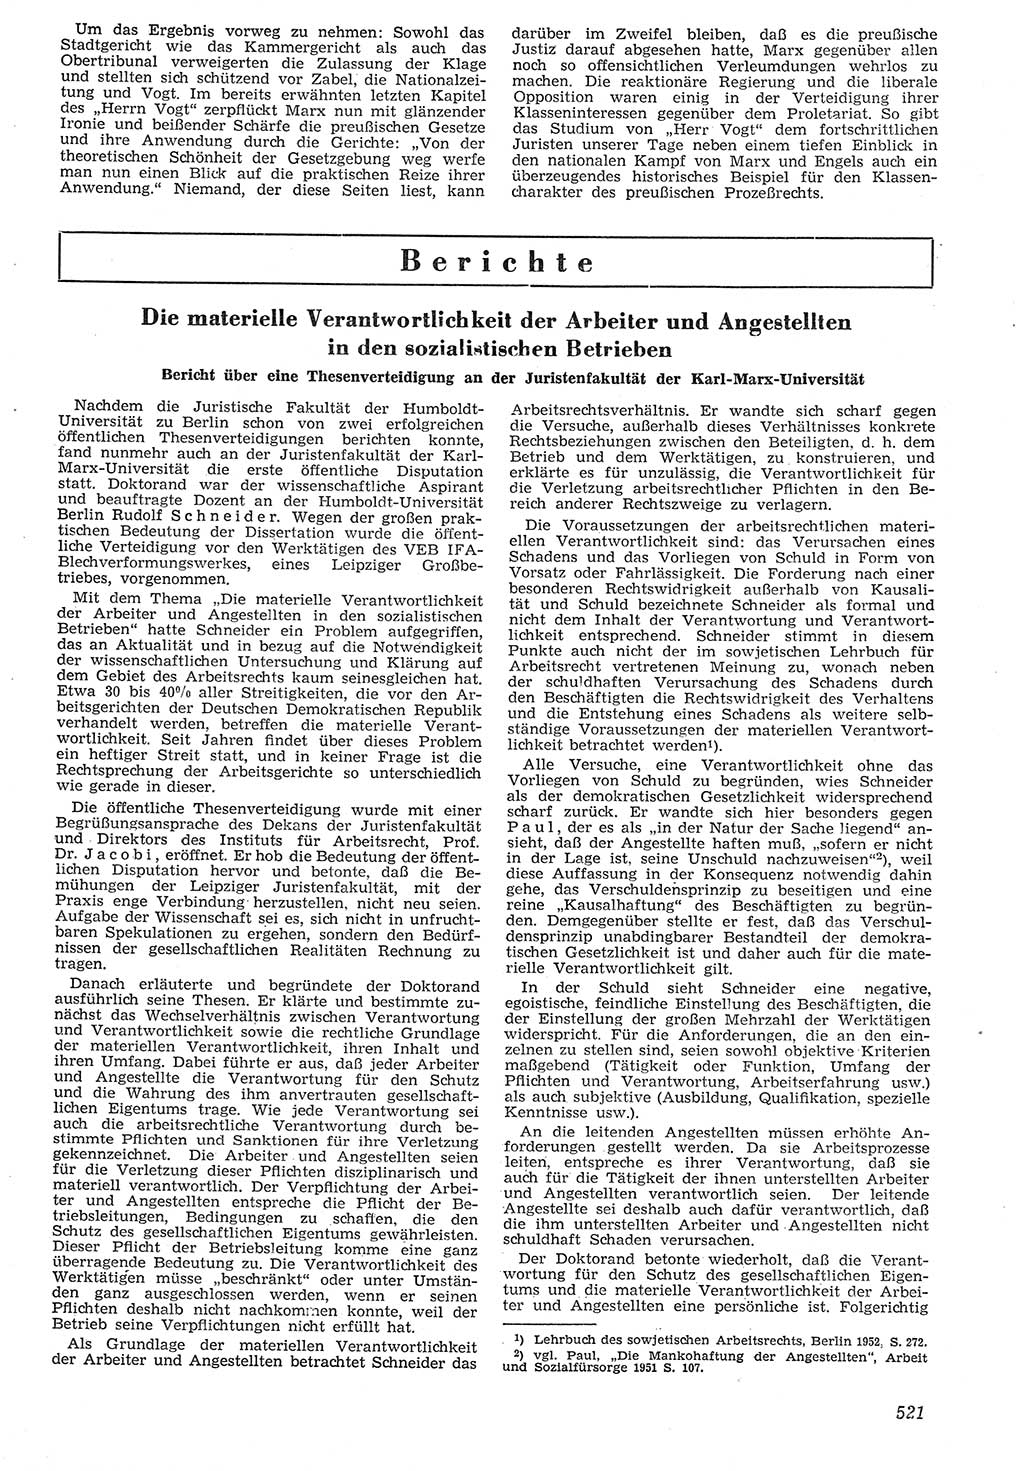 Neue Justiz (NJ), Zeitschrift für Recht und Rechtswissenschaft [Deutsche Demokratische Republik (DDR)], 7. Jahrgang 1953, Seite 521 (NJ DDR 1953, S. 521)